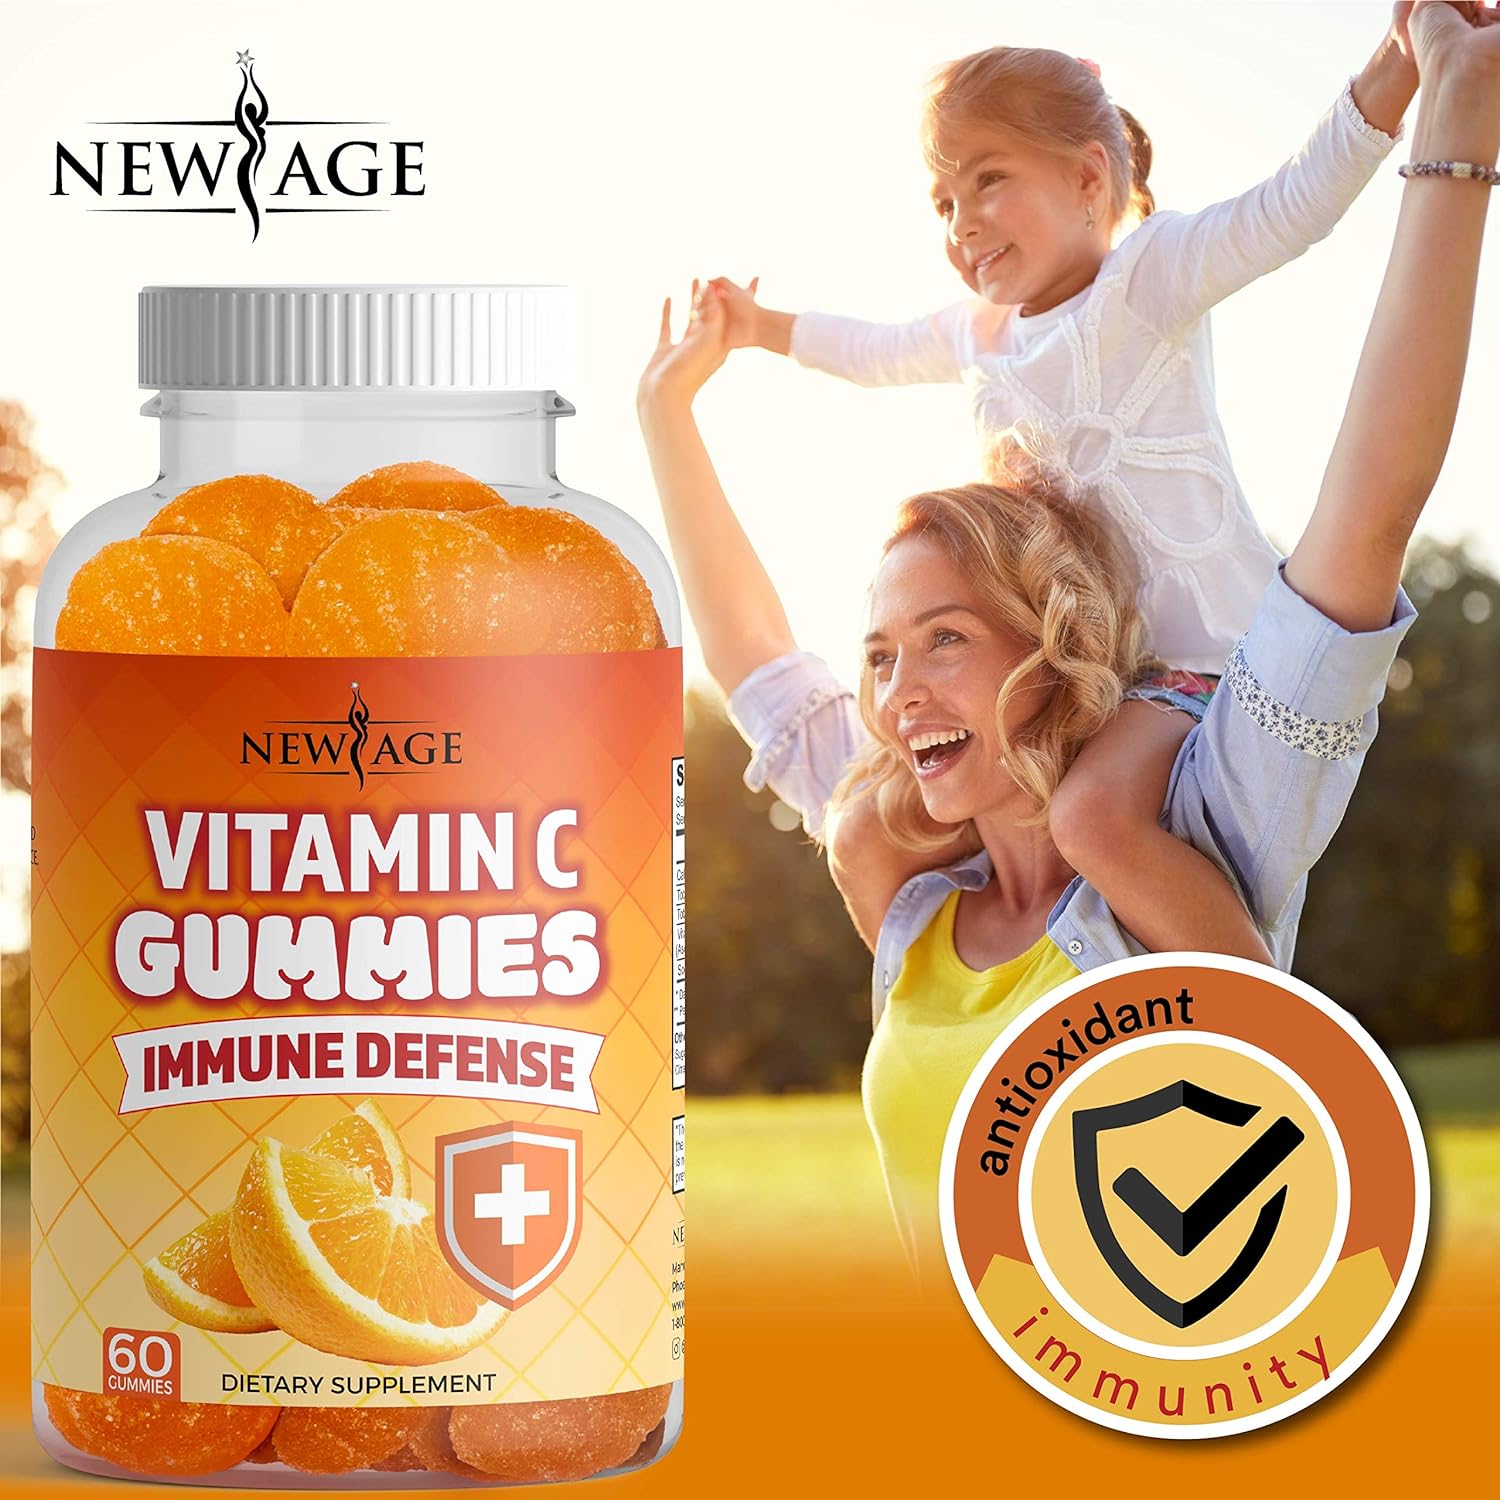 NEW AGE Vitamin C Gummies Orange Vitamin C Gummy - Supports Healthy Immune System - Vegetarian Without Gluten (60 Gummies) : Health & Household